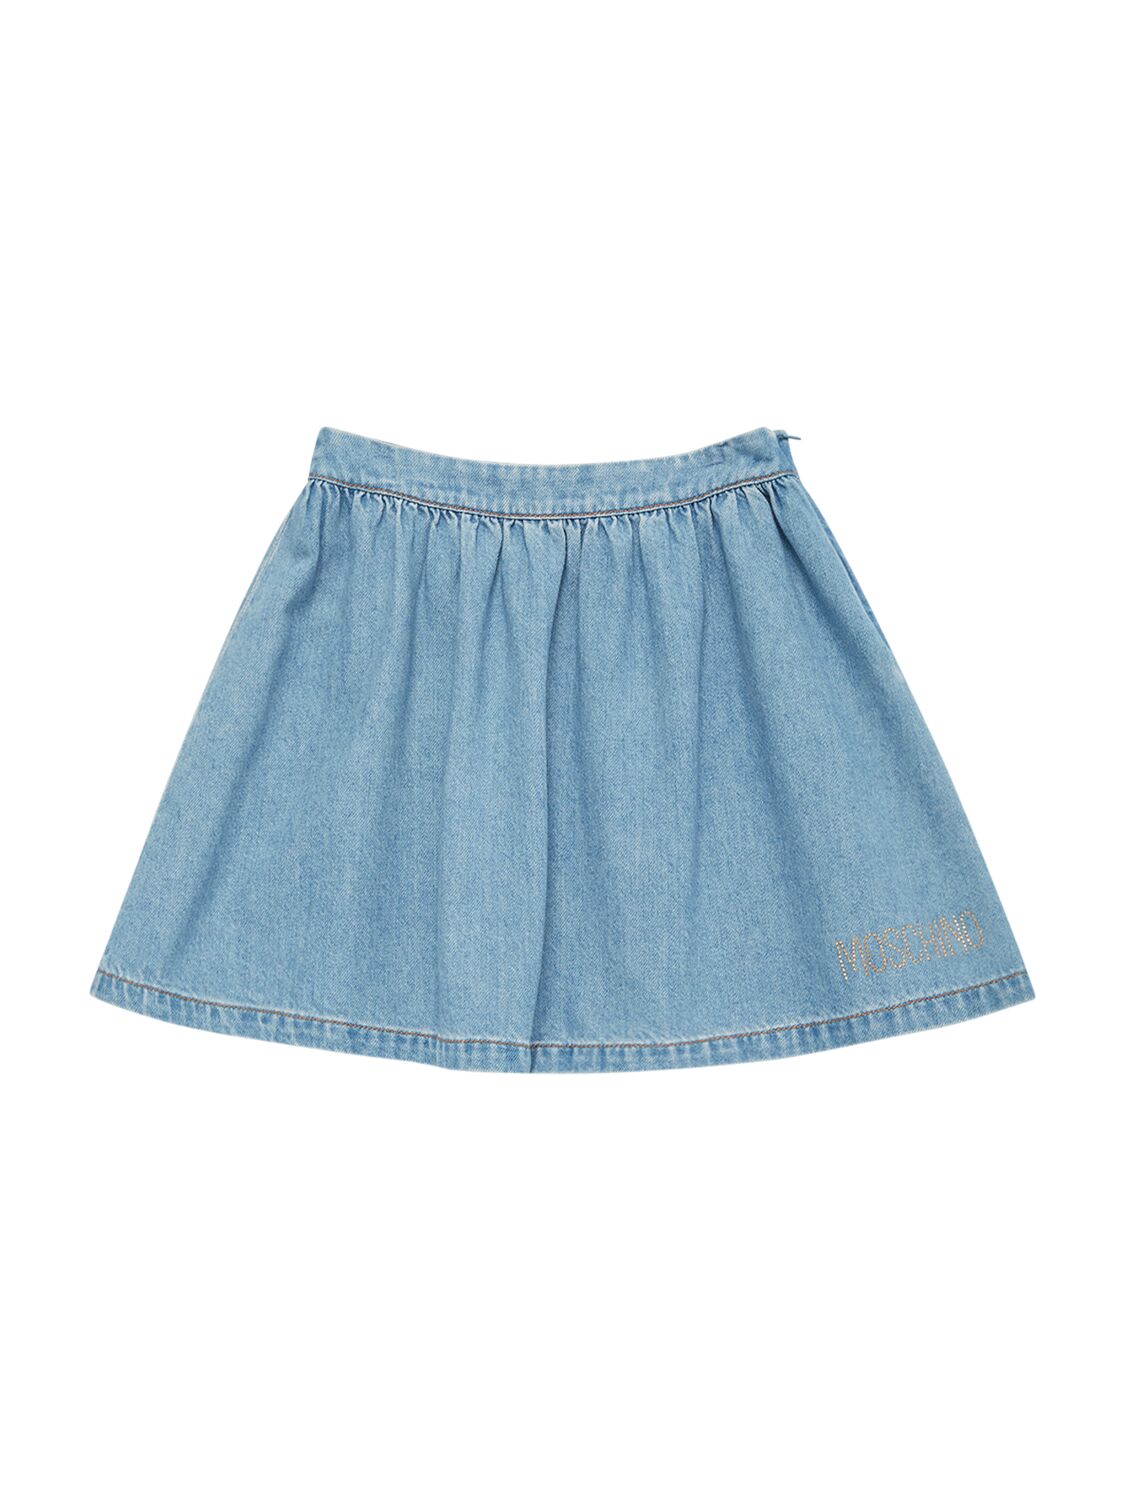 Moschino Kids' Light Denim Skirt